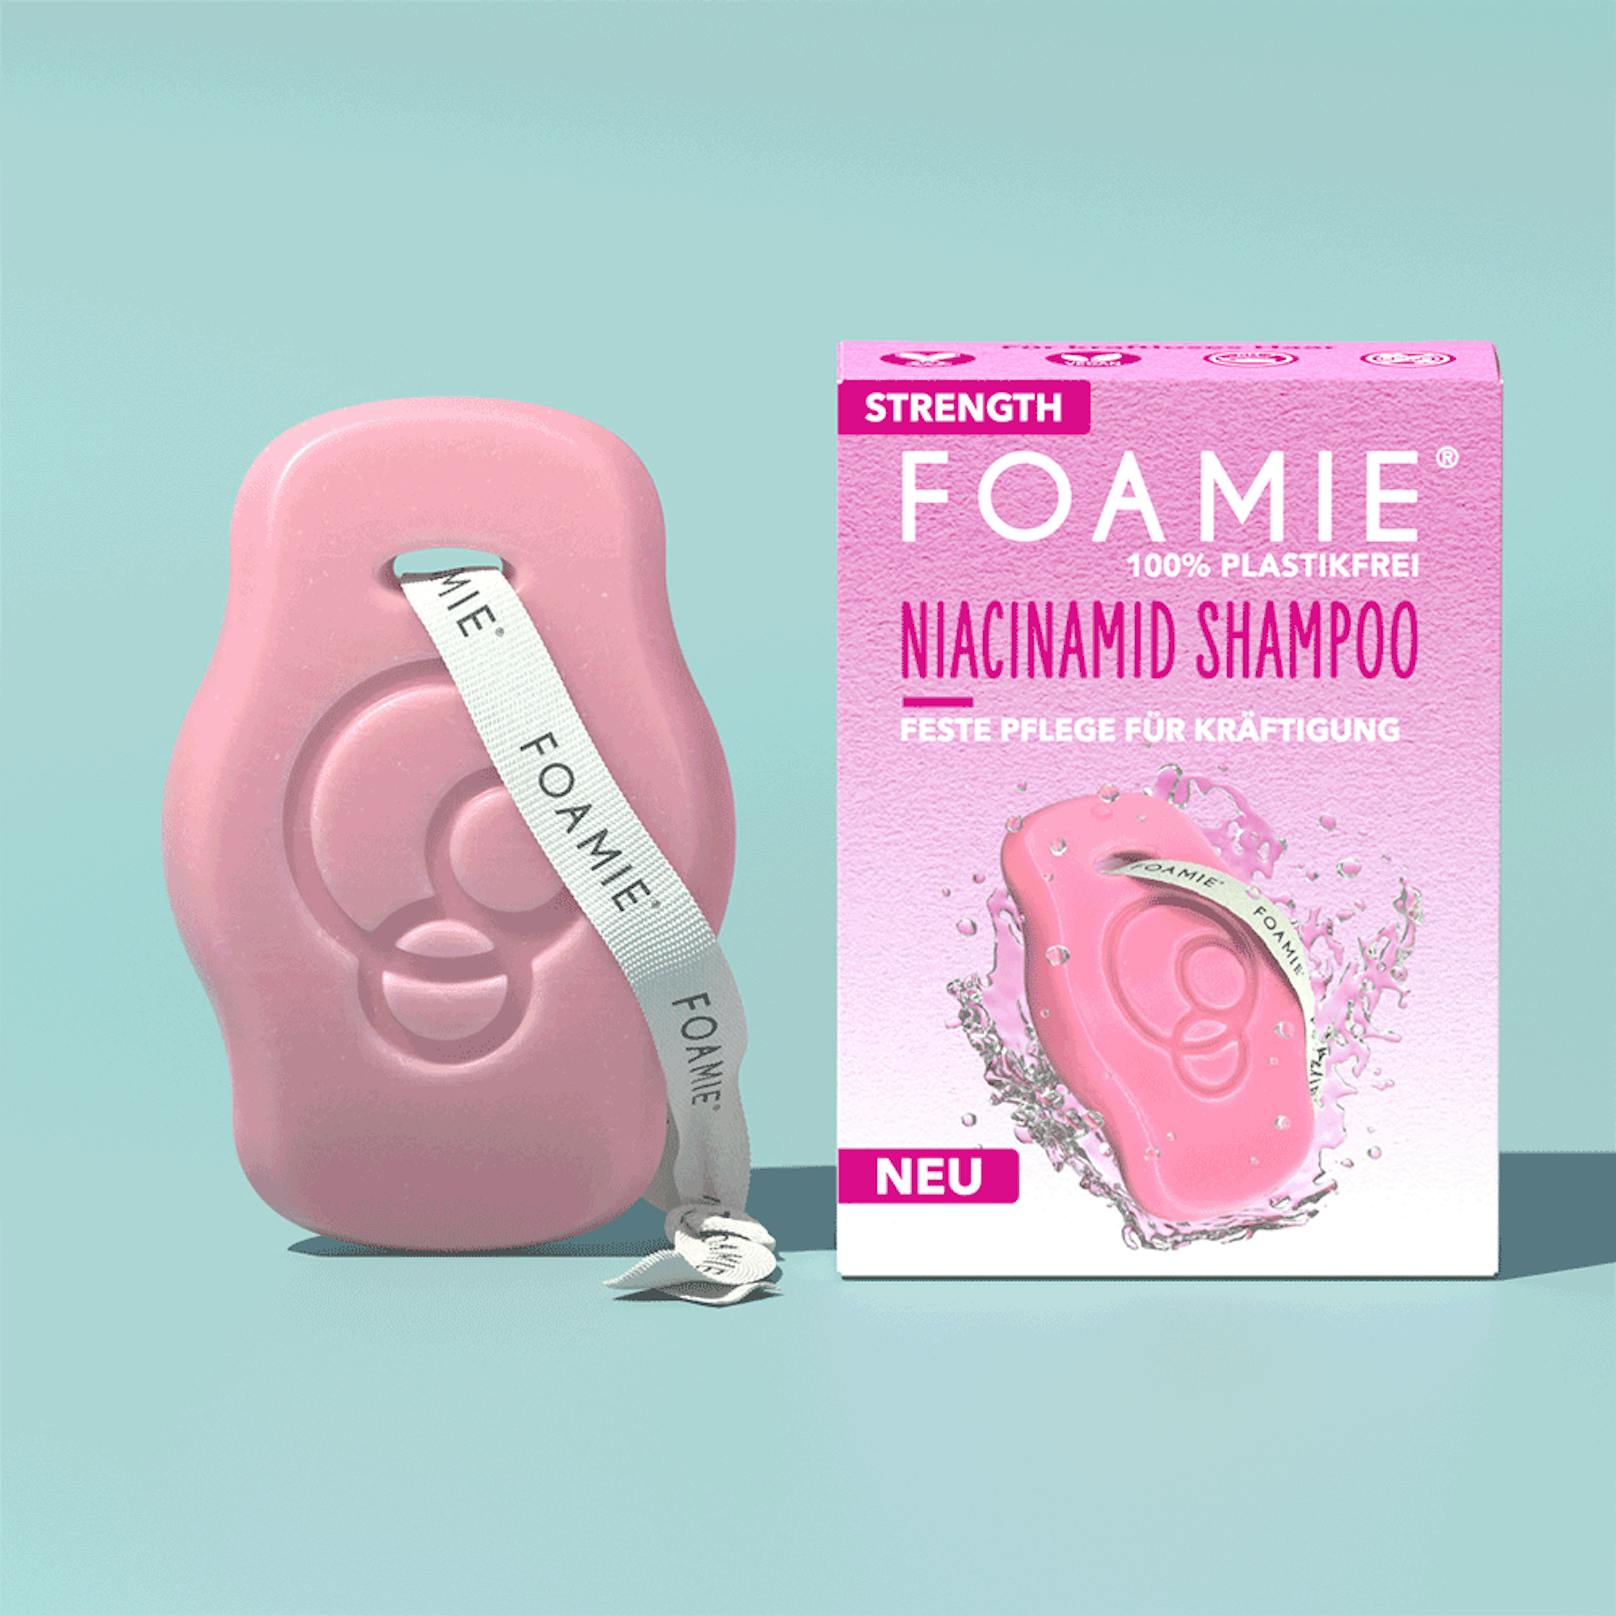 Niacinamide (B-Vitamine) versorgen Haut und Haare mit Feuchtigkeit. Kult-Marke Foamie hat damit auch ein Shampoo formuliert. (Preis ca. 6 Euro - je nach Händler)